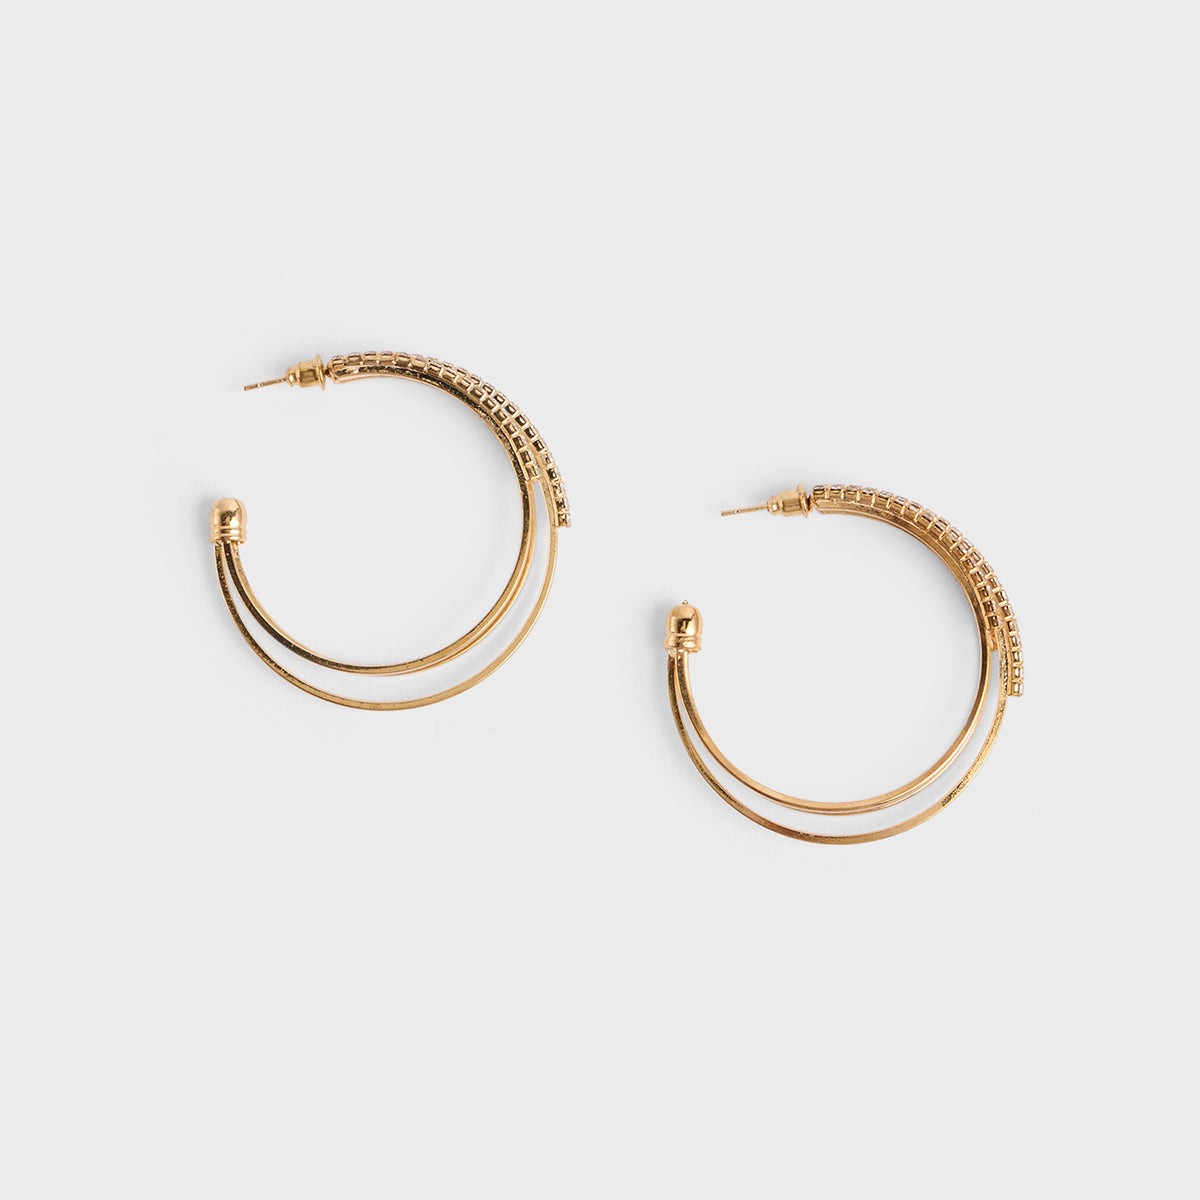 Jaren Hammered Gold Hoop Earrings Jewellery India Online - CaratLane.com